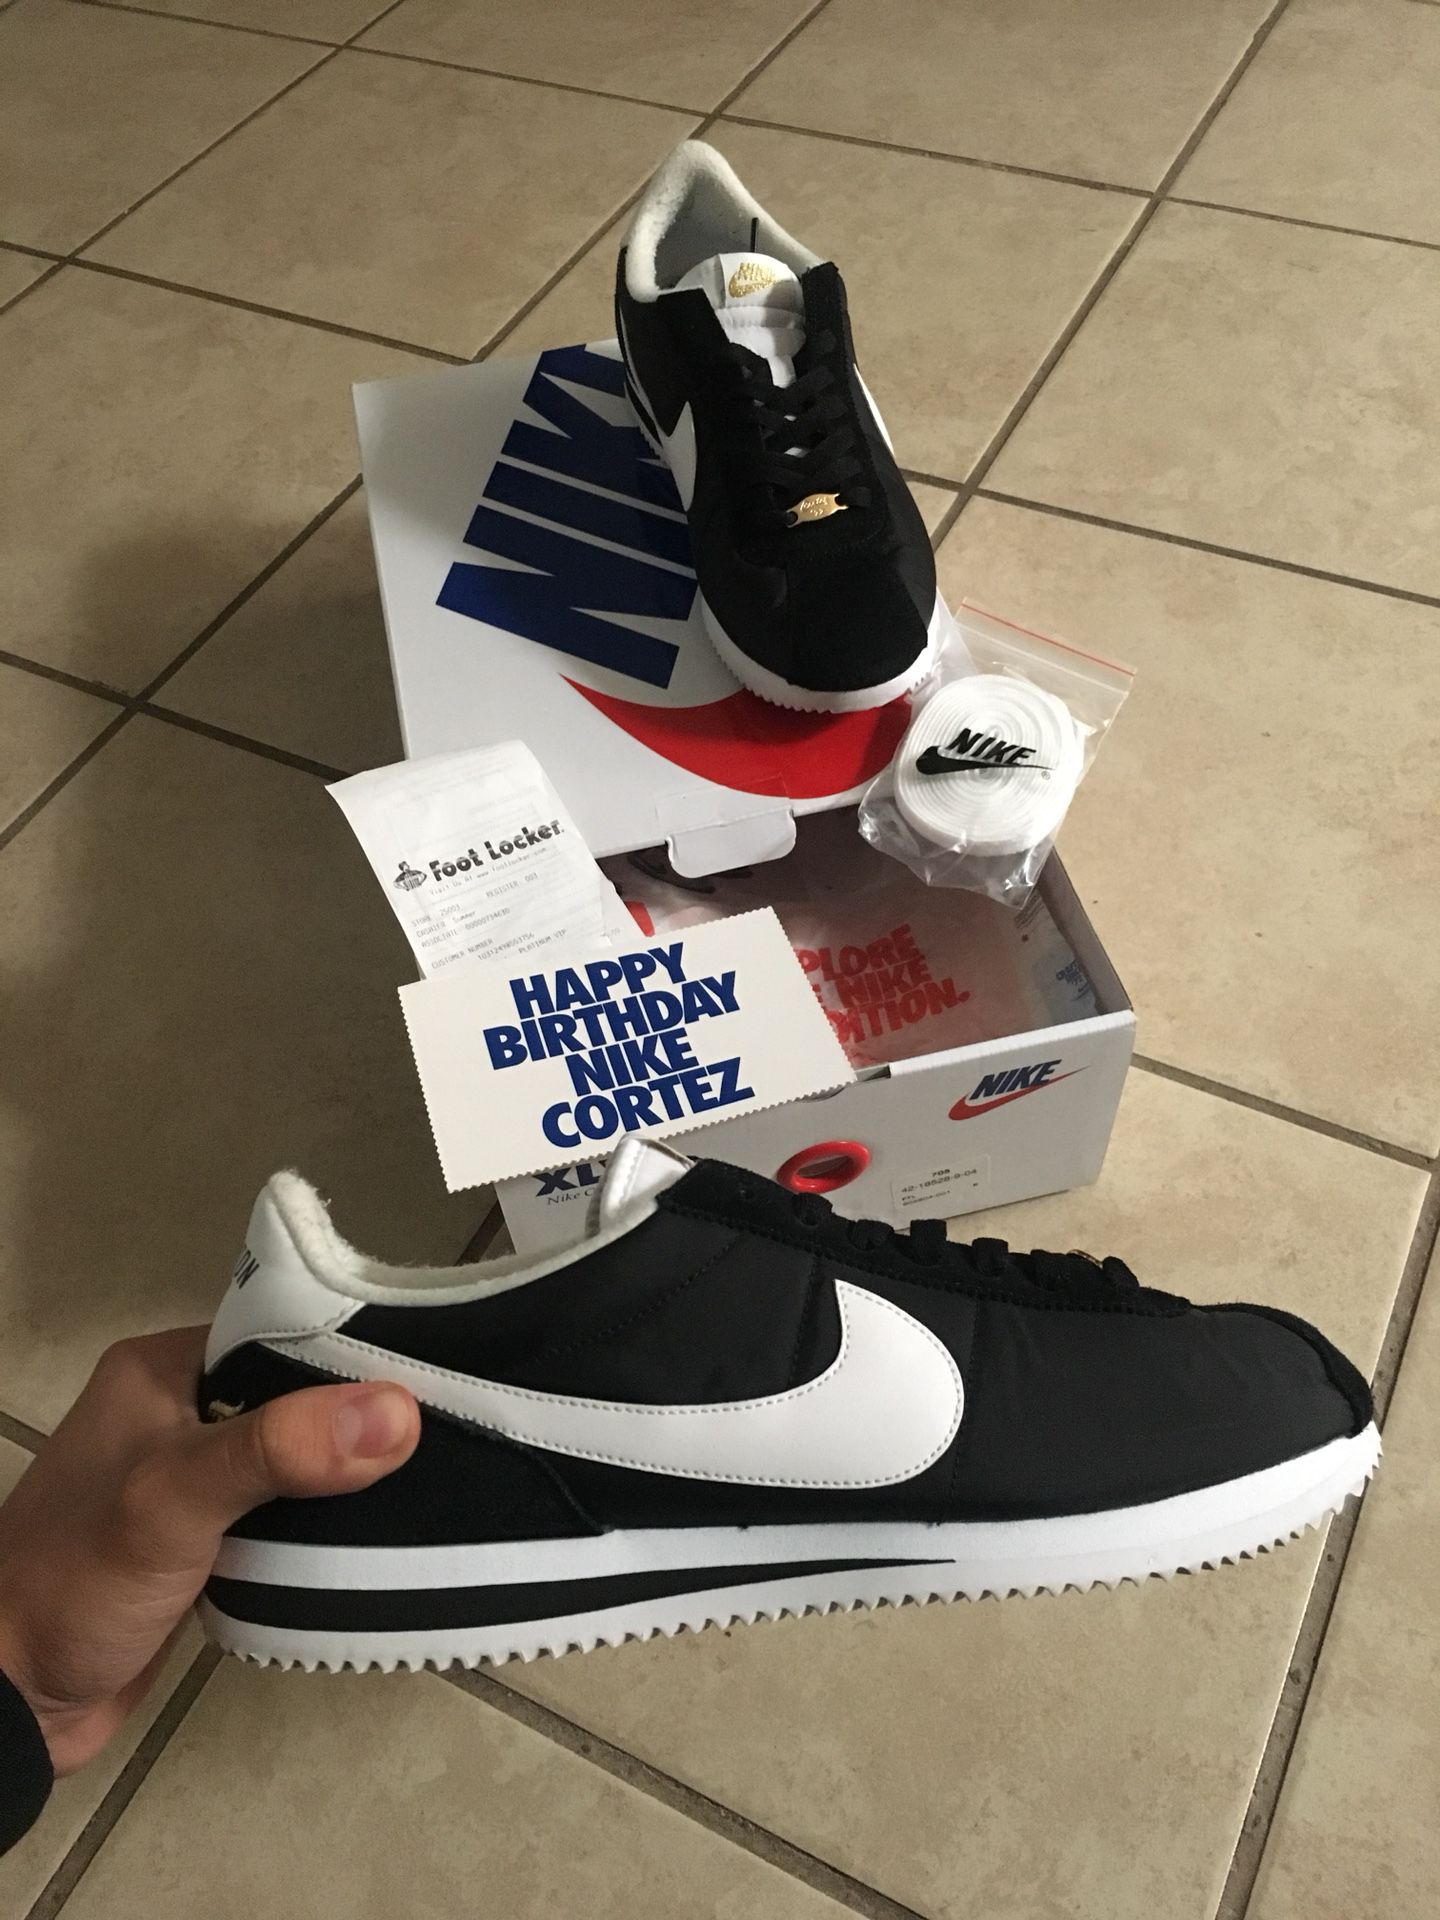 Vervagen Stoutmoedig Aanhankelijk Nike Cortez Compton Kendrick for Sale in Buena Park, CA - OfferUp